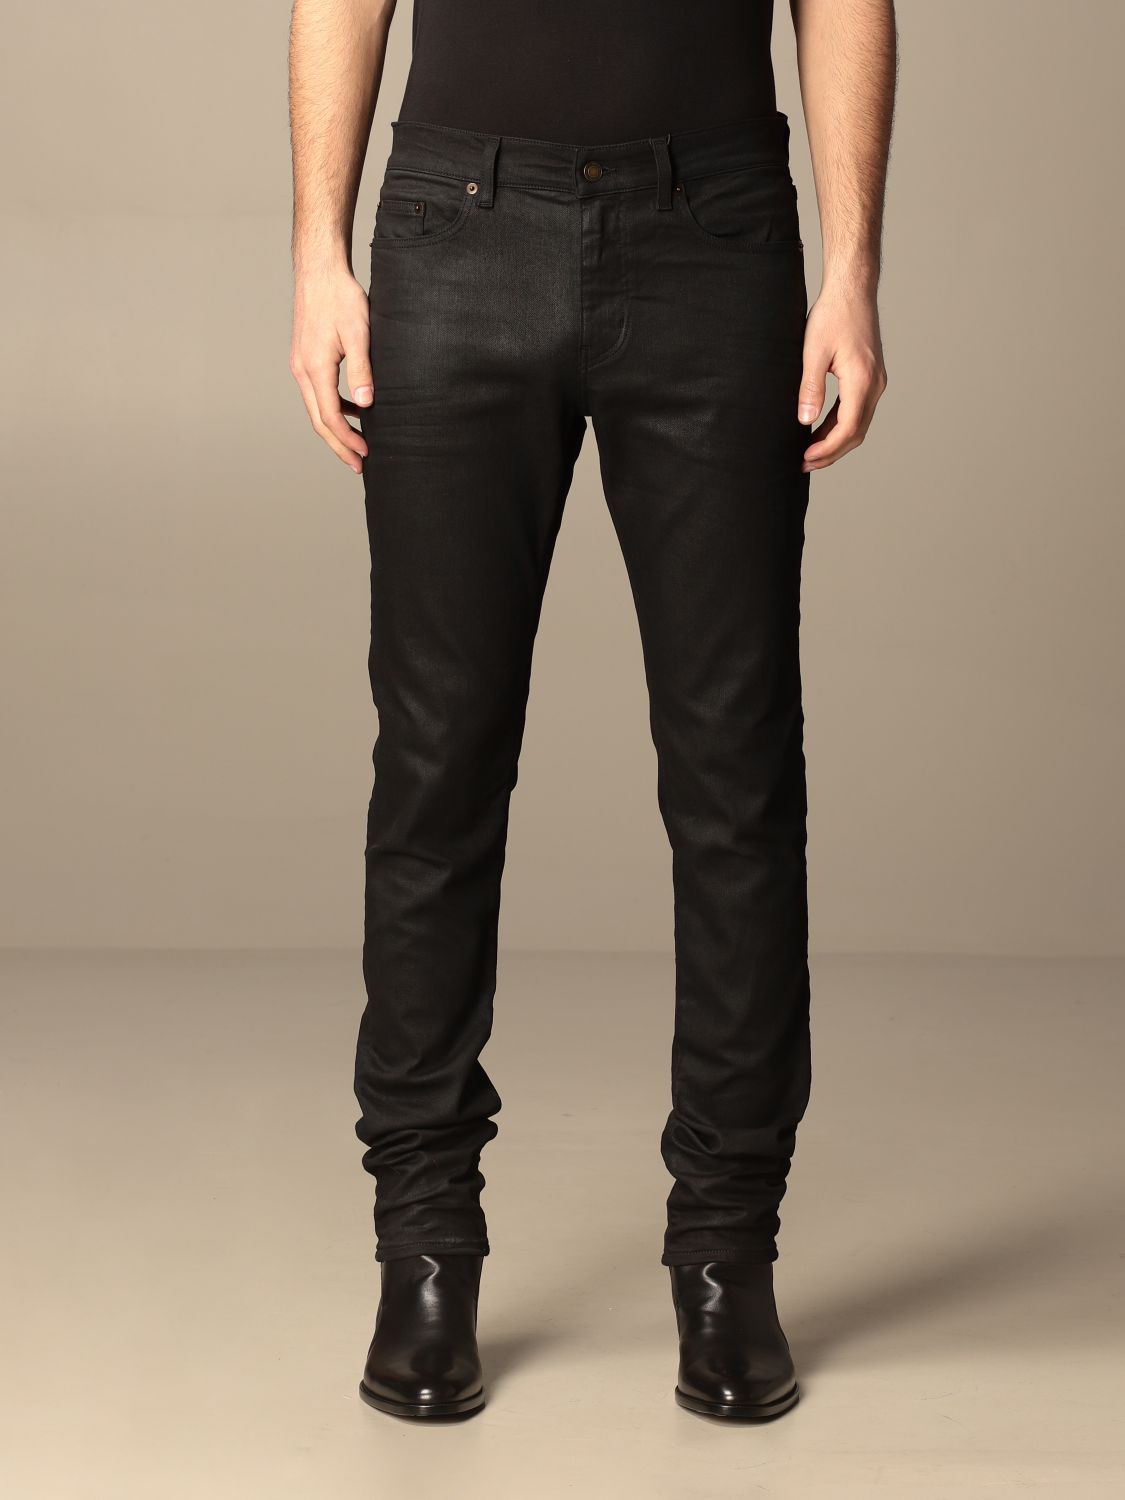 Saint Laurent 5-pocket jeans